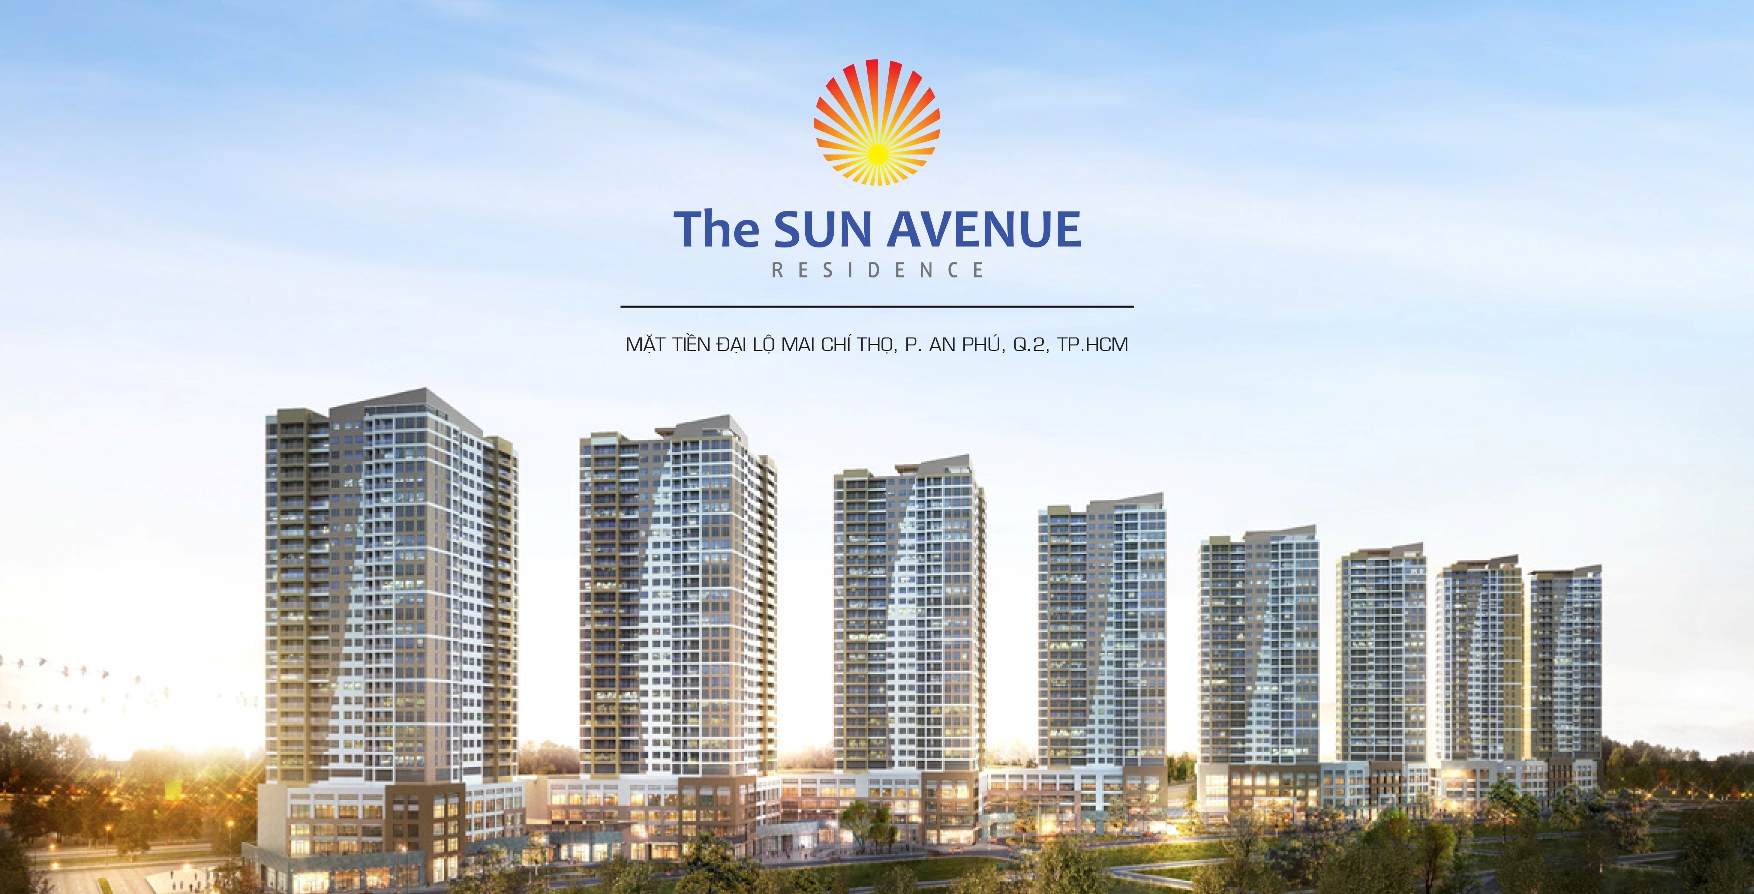 Bảng giá cho thuê căn hộ chung cư The Sun Avenue